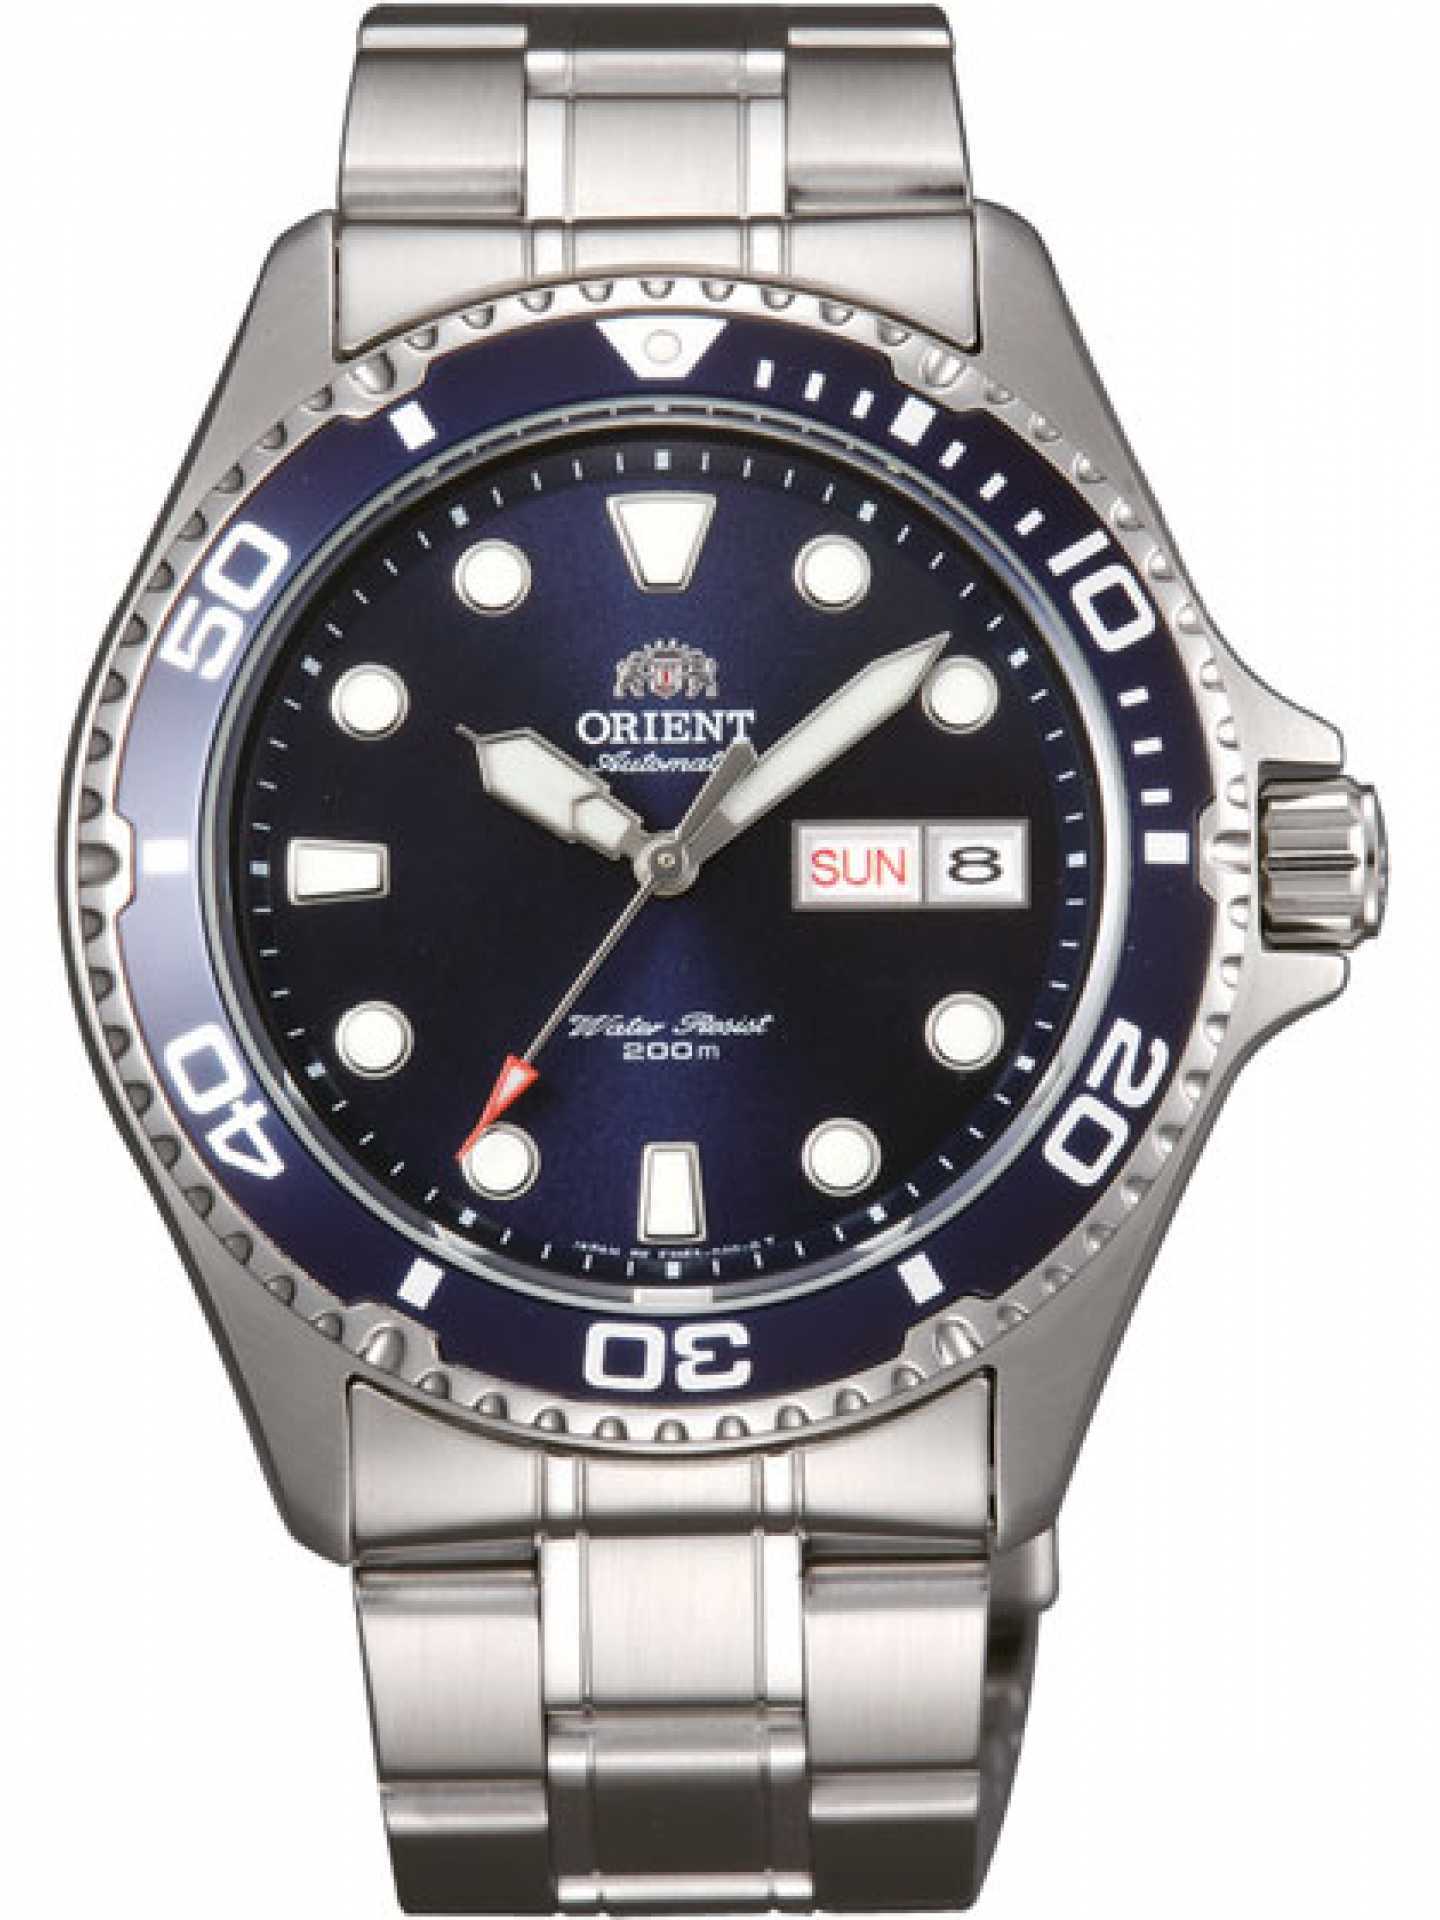 Orient AA02 dive watch